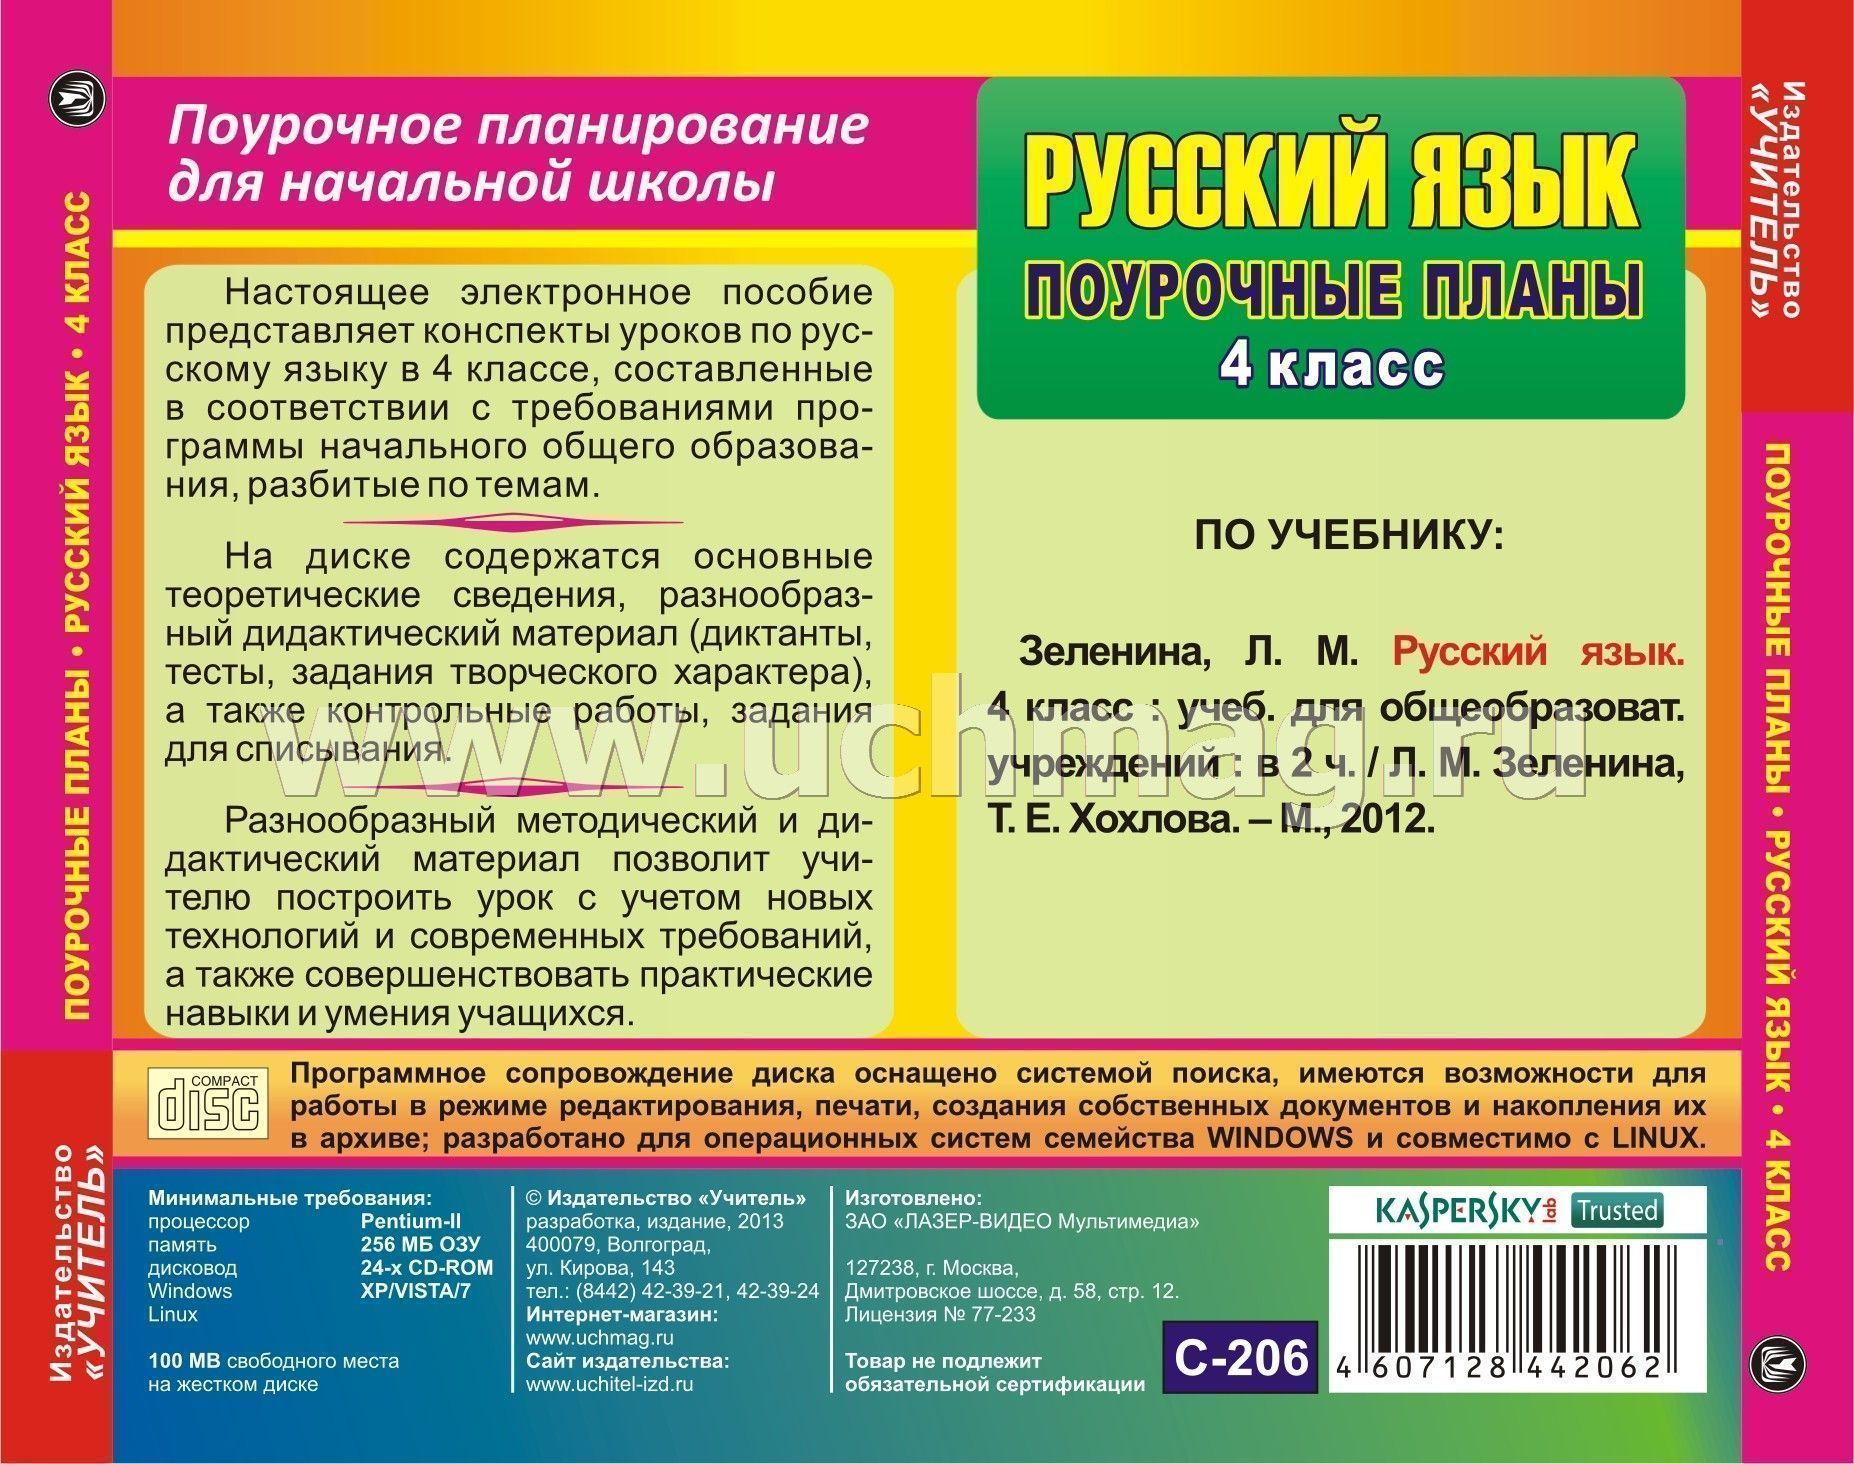 Русский язык поурочные планы по учебнику зелениной 4 класс 1 полугодие скачать